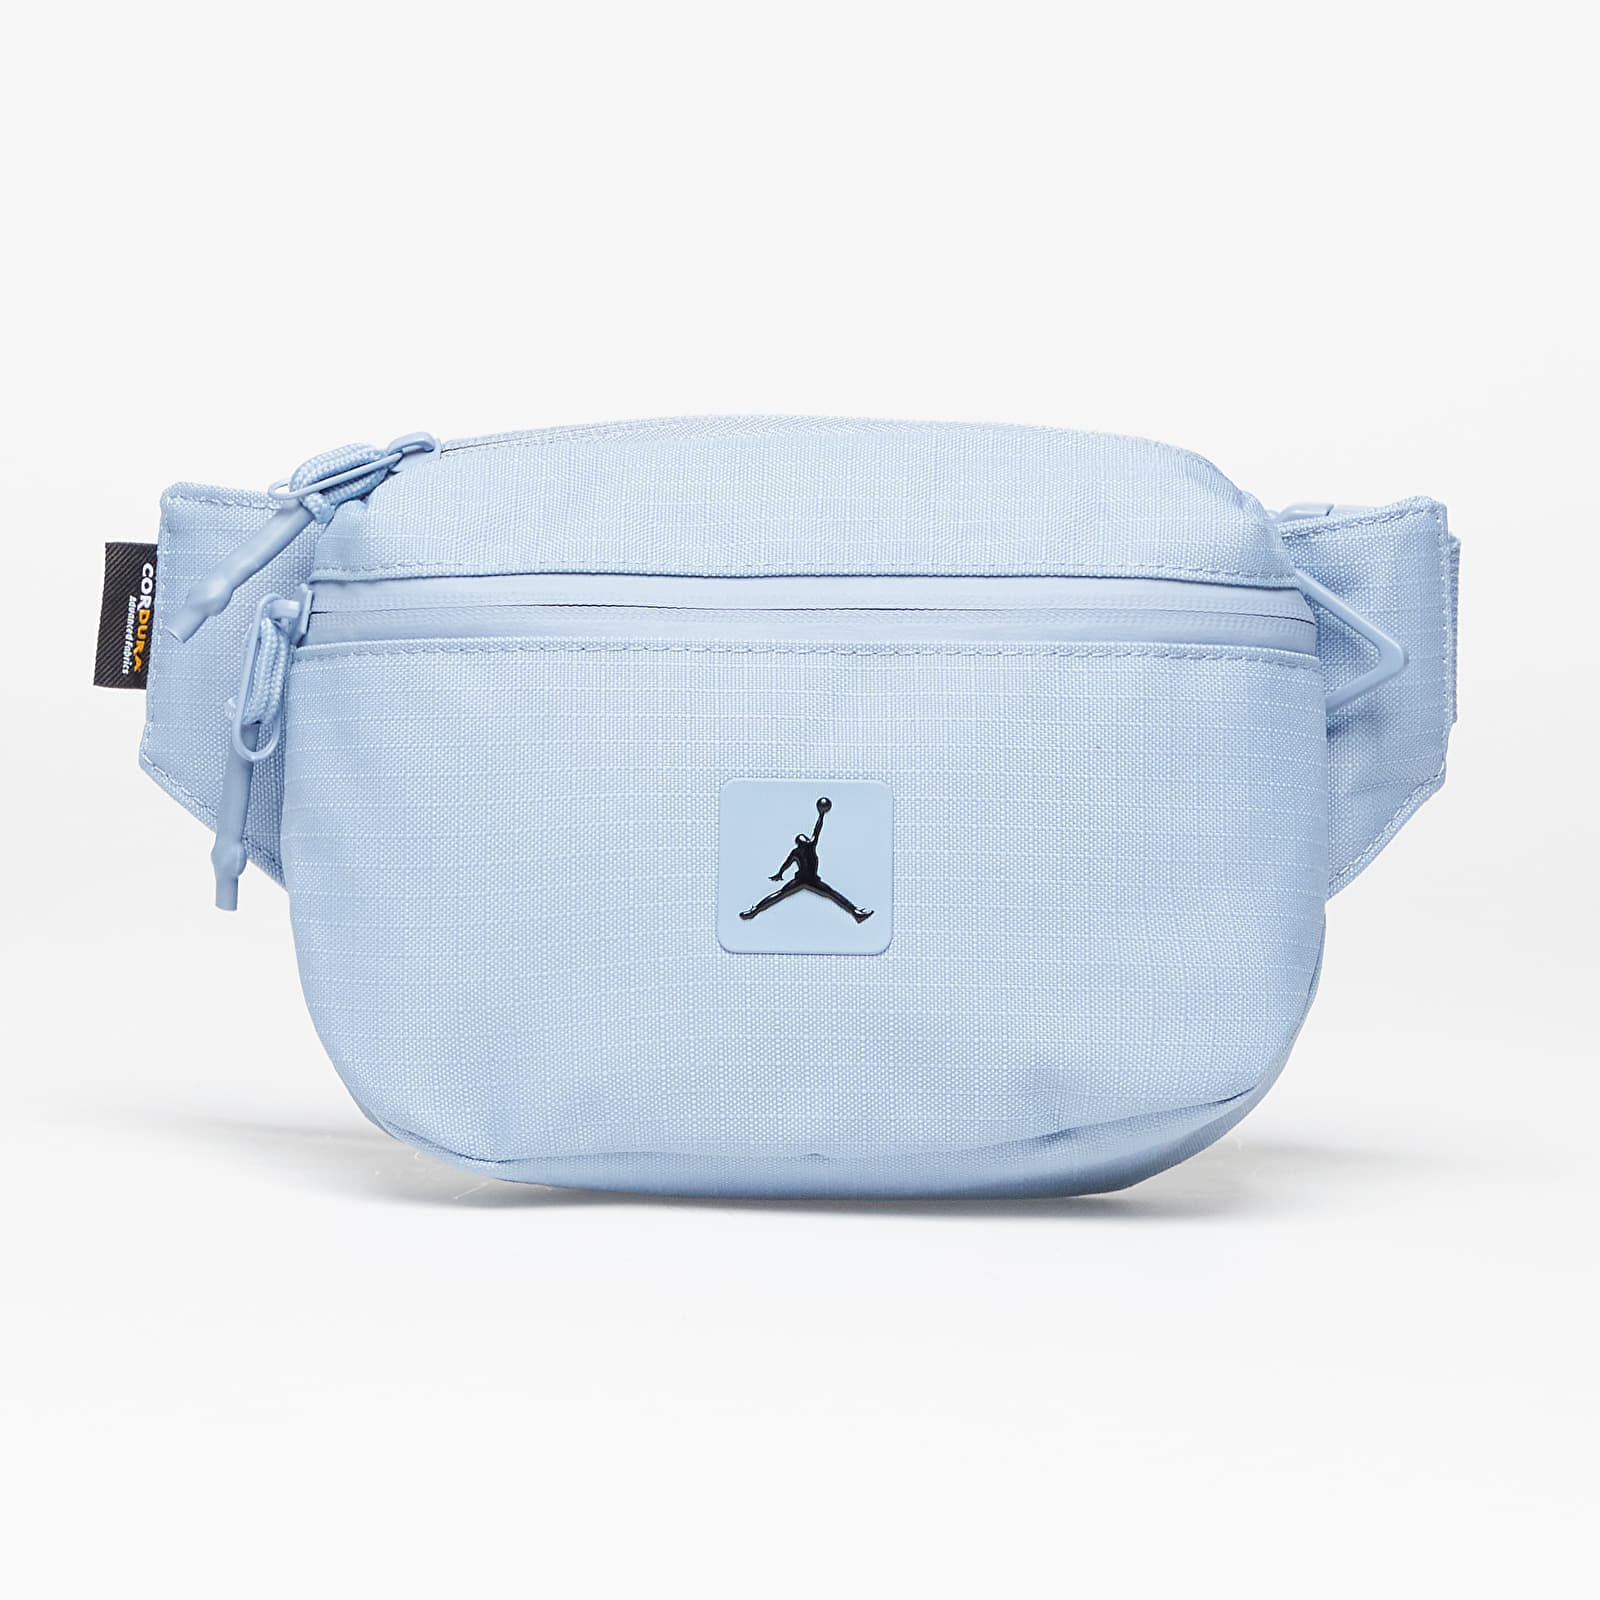 Хип чанти Jordan Cordura Franchise Cross Body Bag Blue Grey